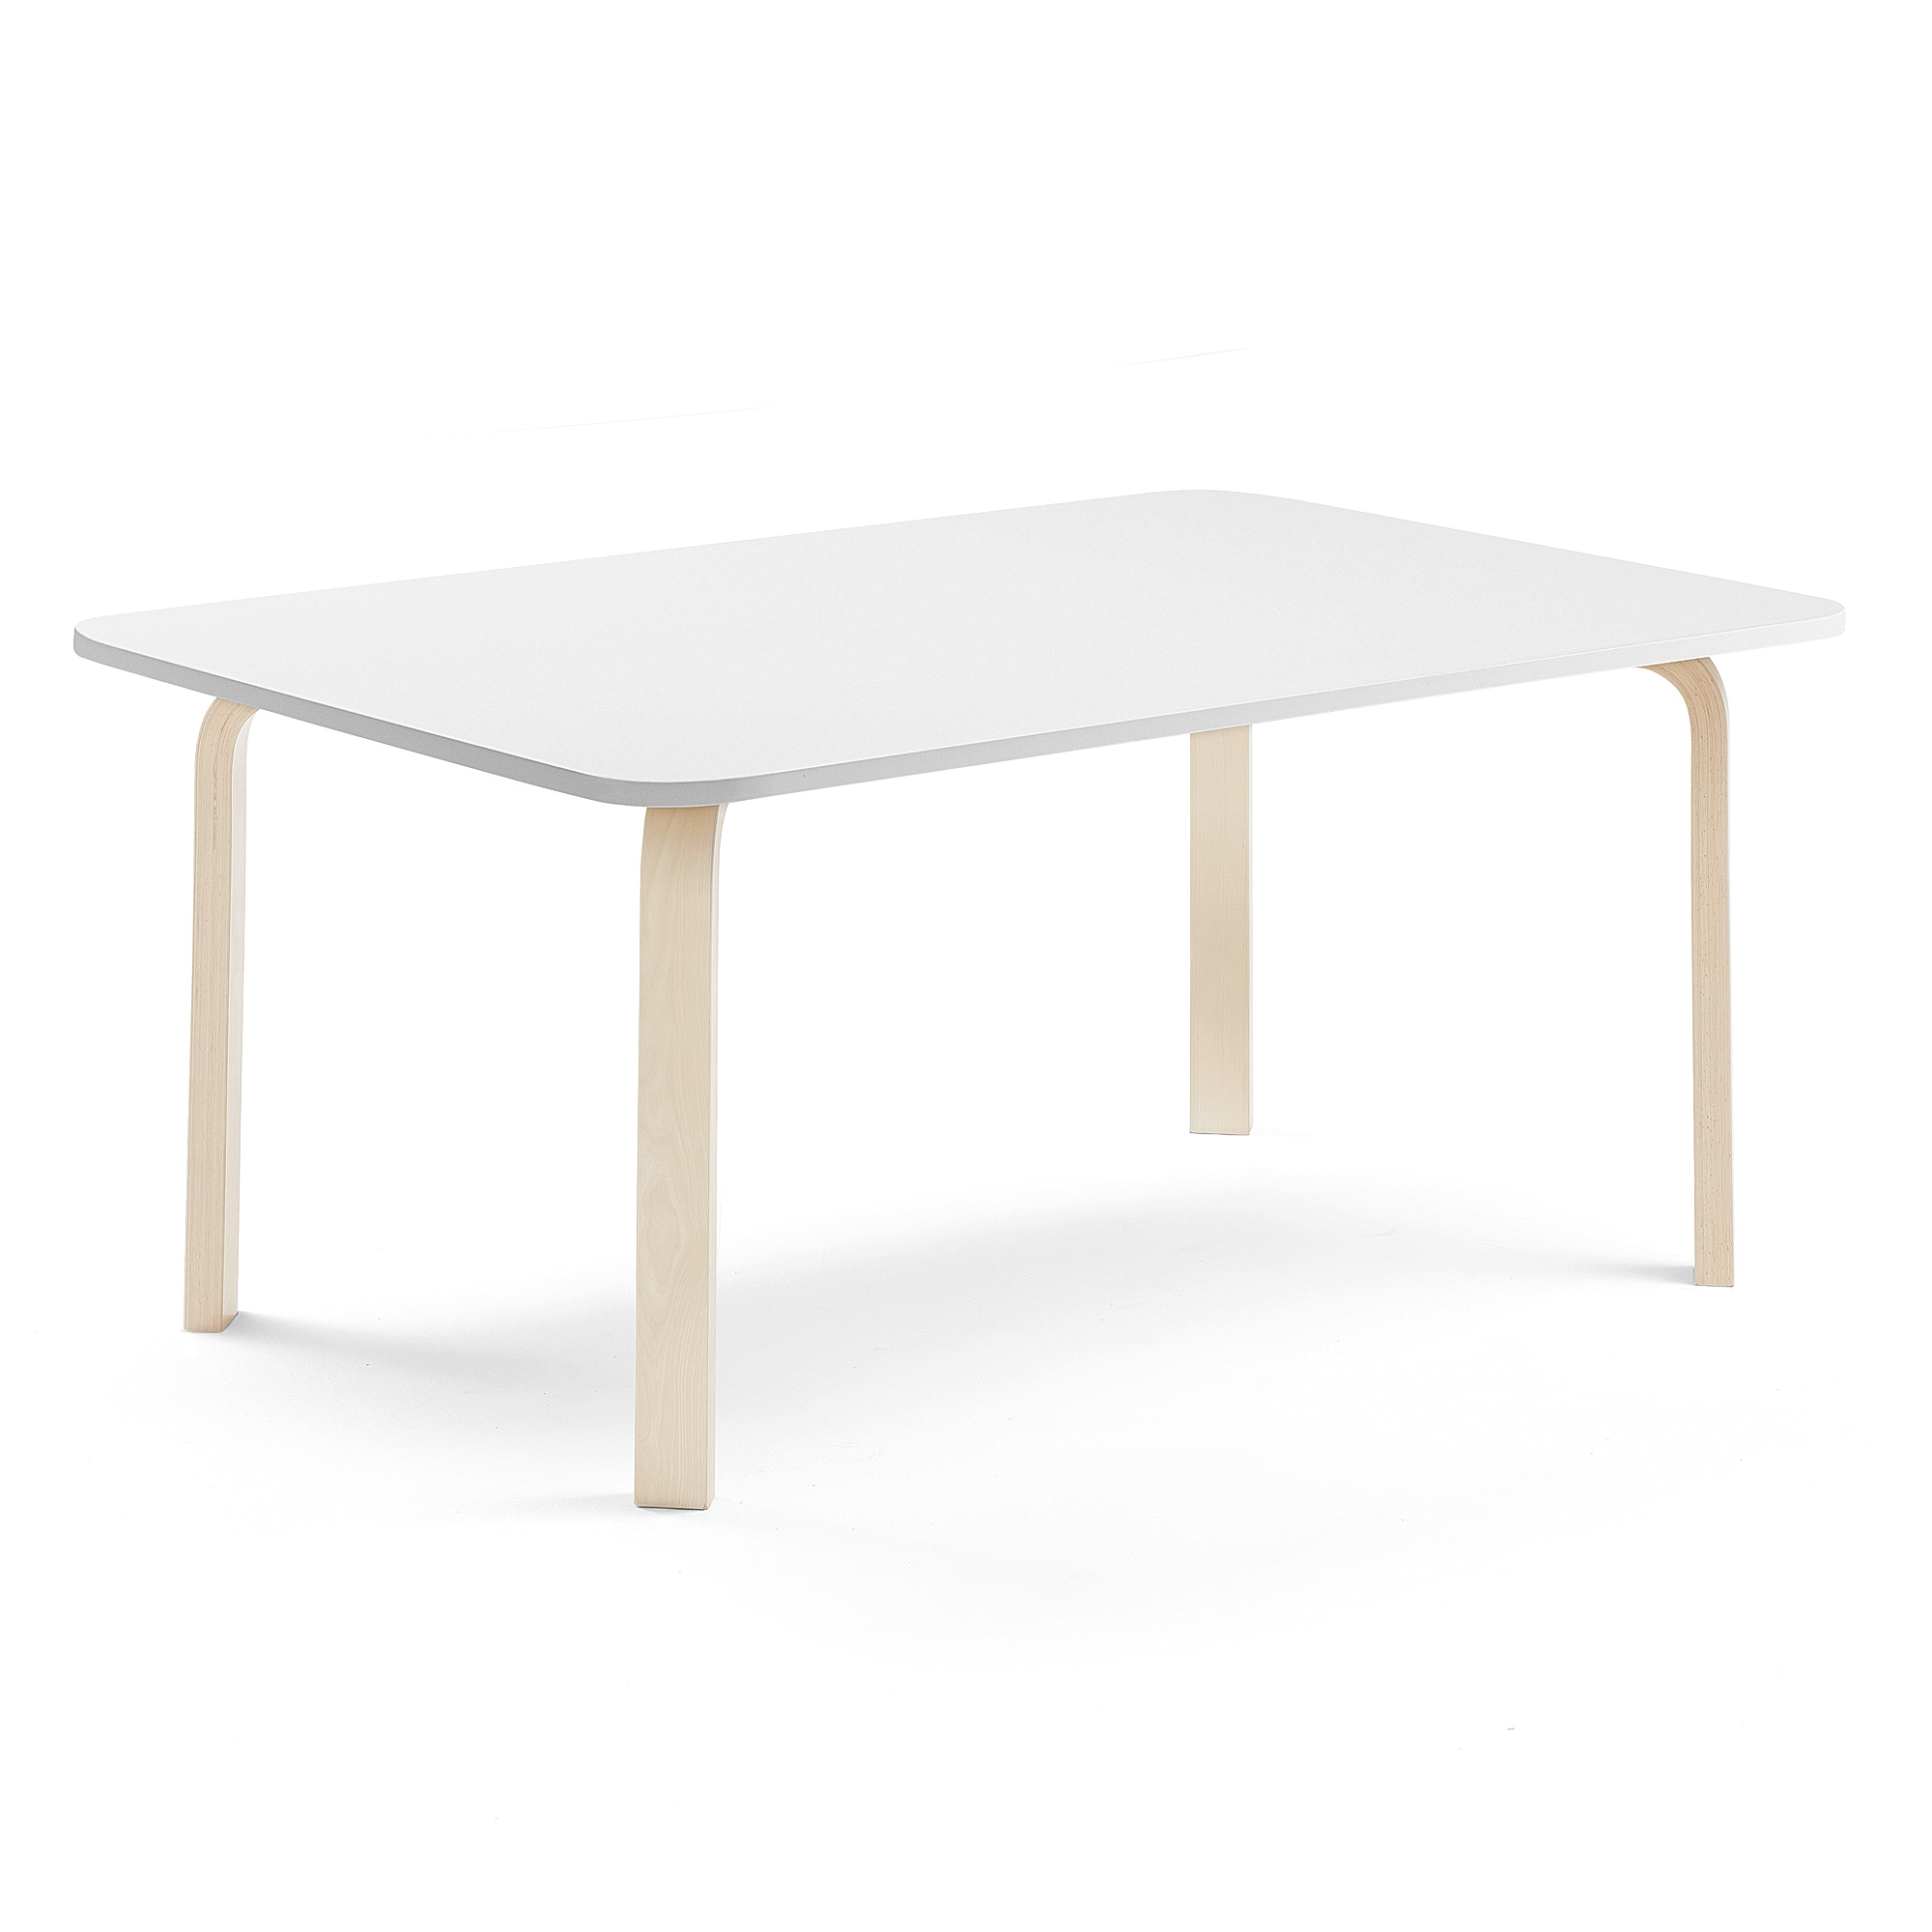 Stůl ELTON, 1800x700x590 mm, bříza, akustická HPL deska, bílá